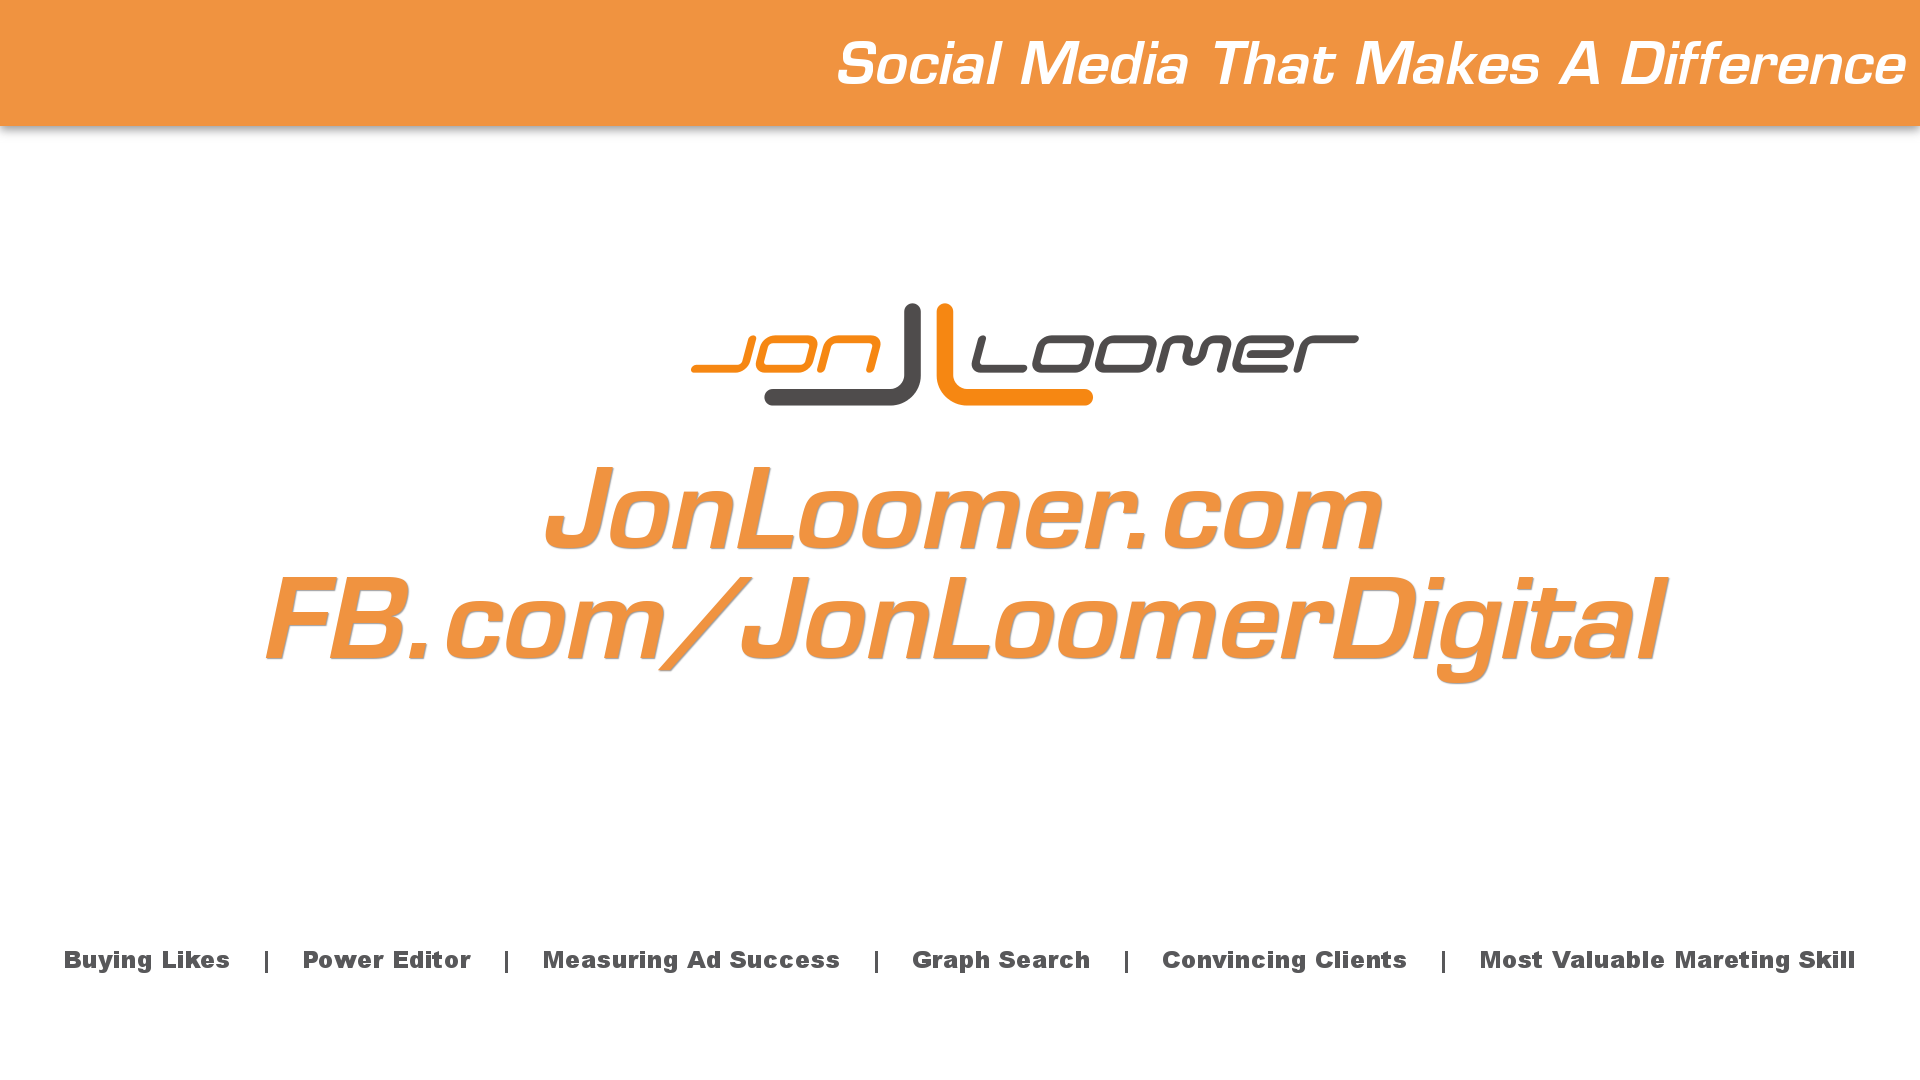 Jon Loomer Video Blog #8